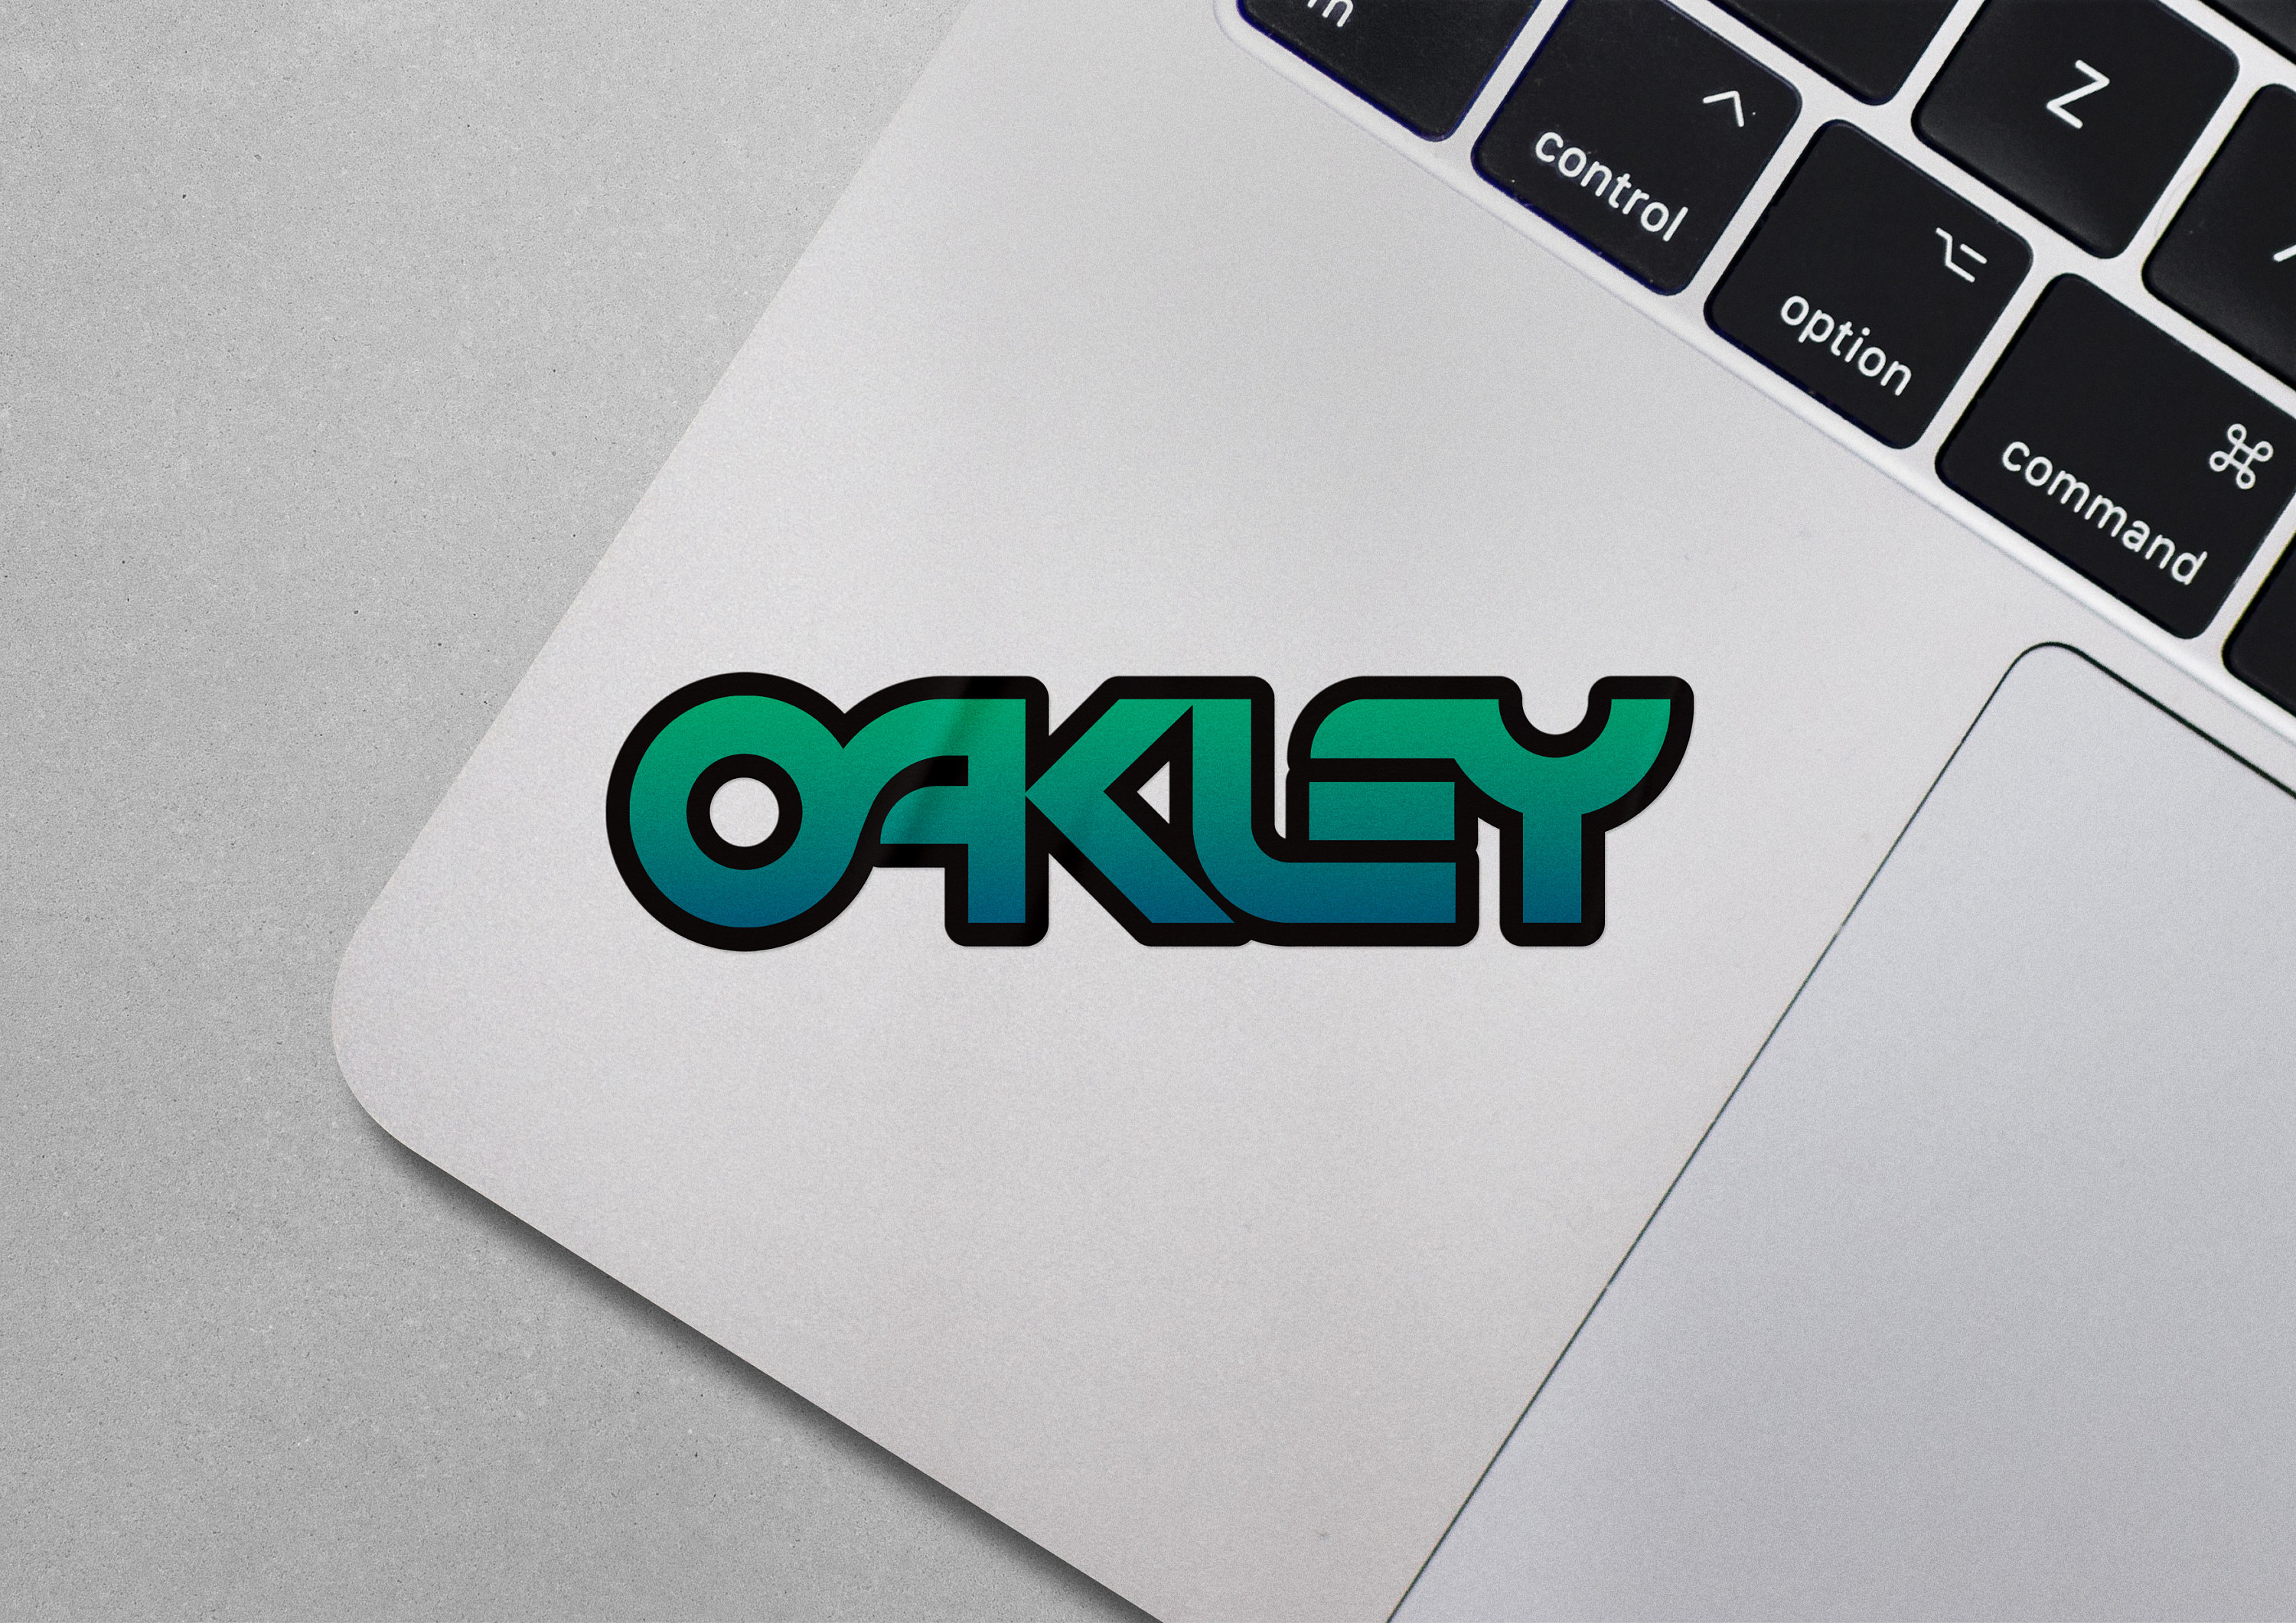 Oakley Men's Oakley® 9 Foundation Logo Sticker